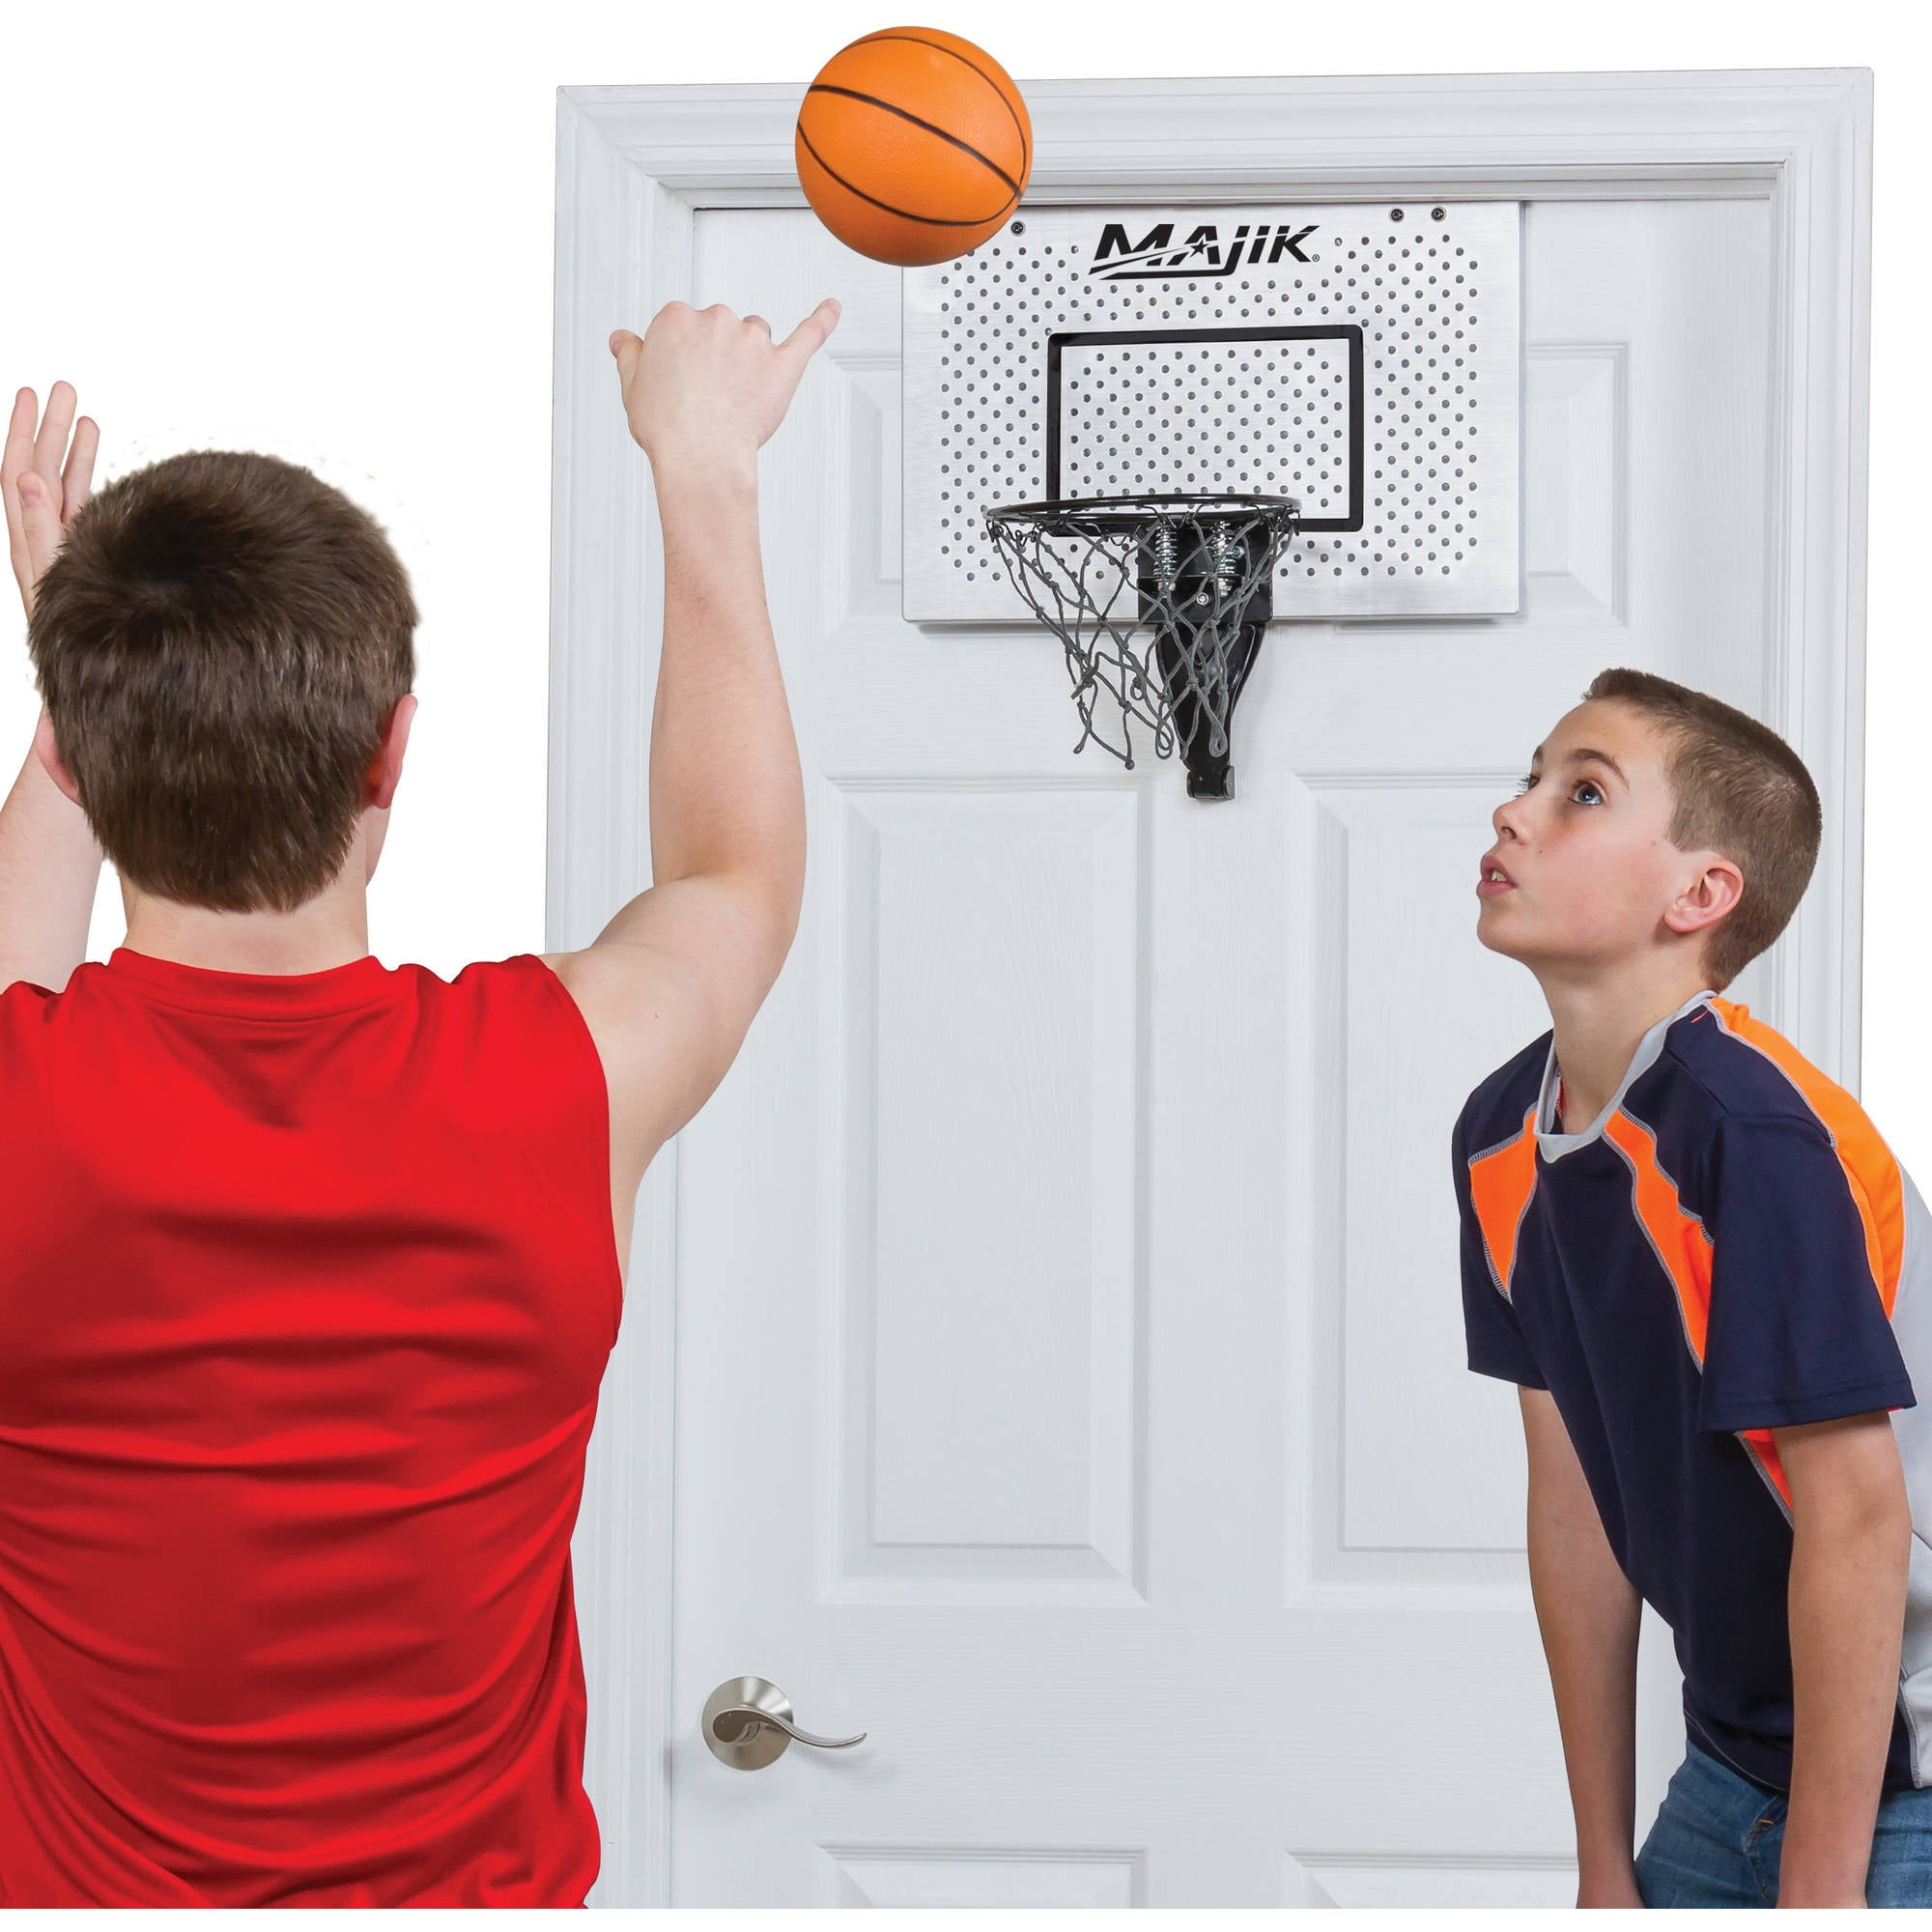 Deluxe Over The Door Basketball